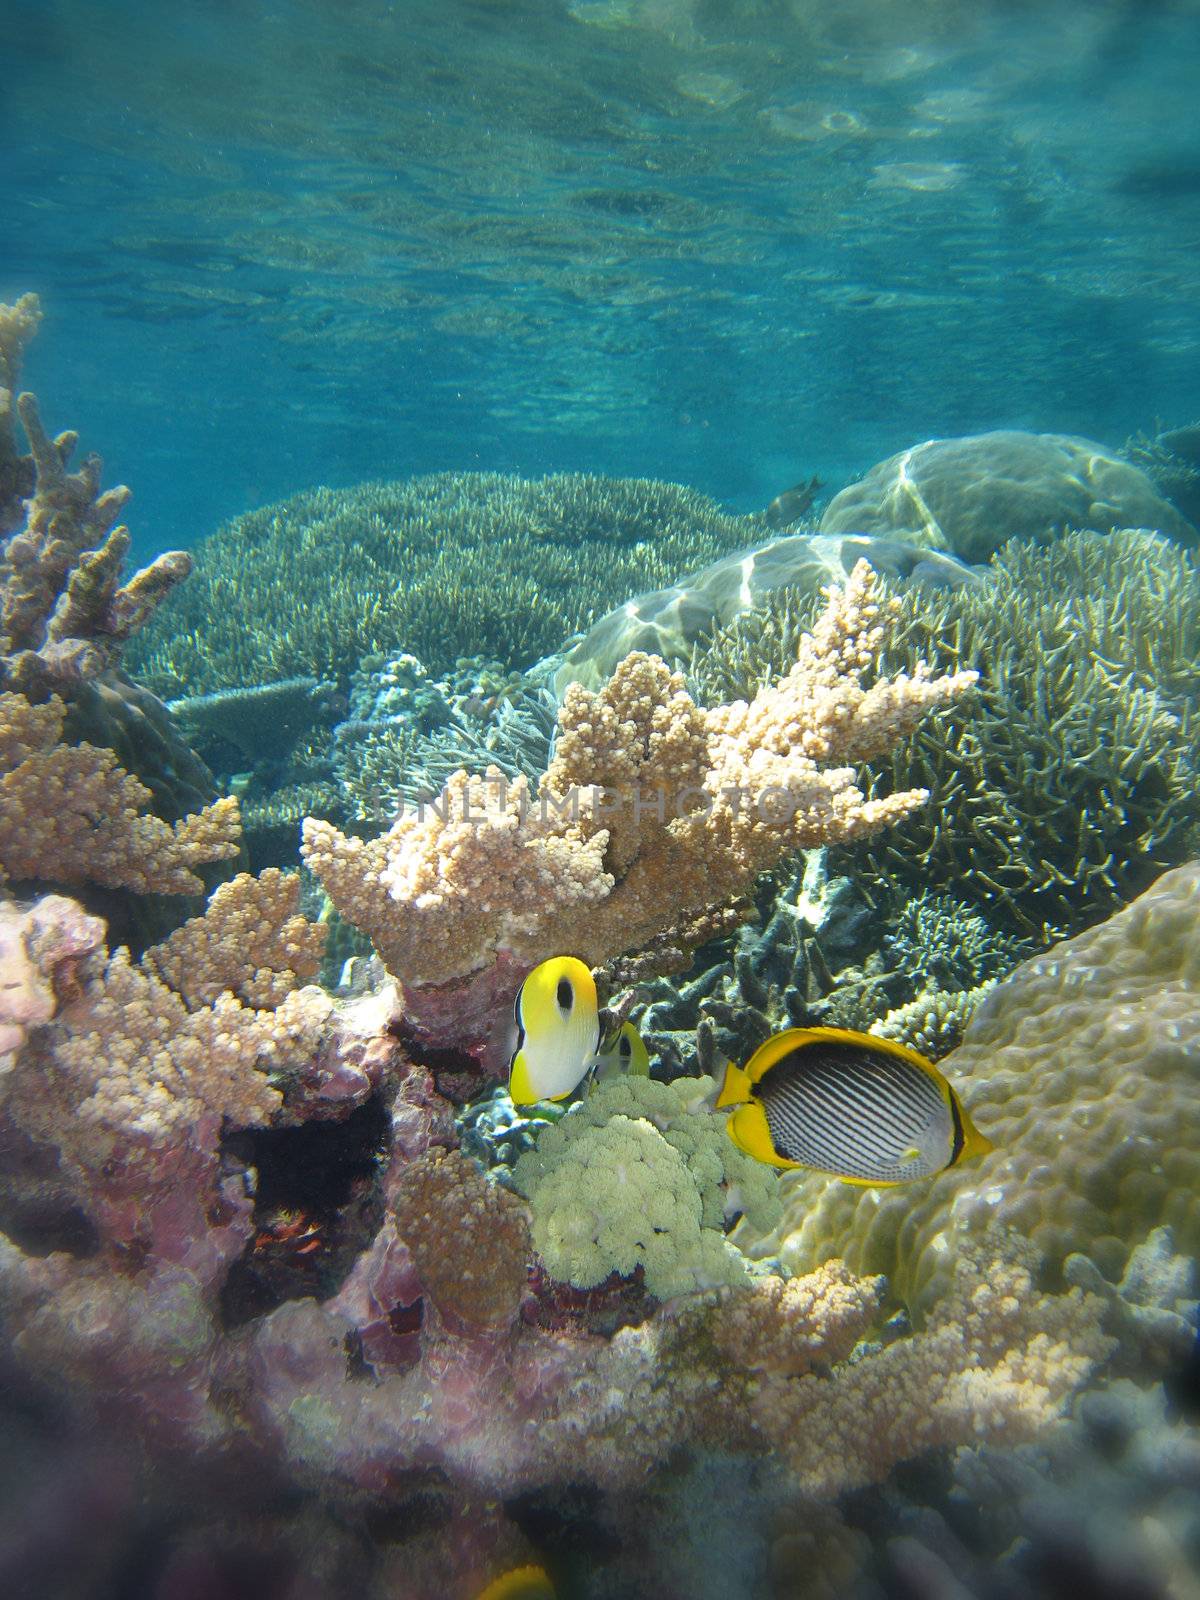 Underwater Scene of Great Barrier Reef in Queensland, Australia